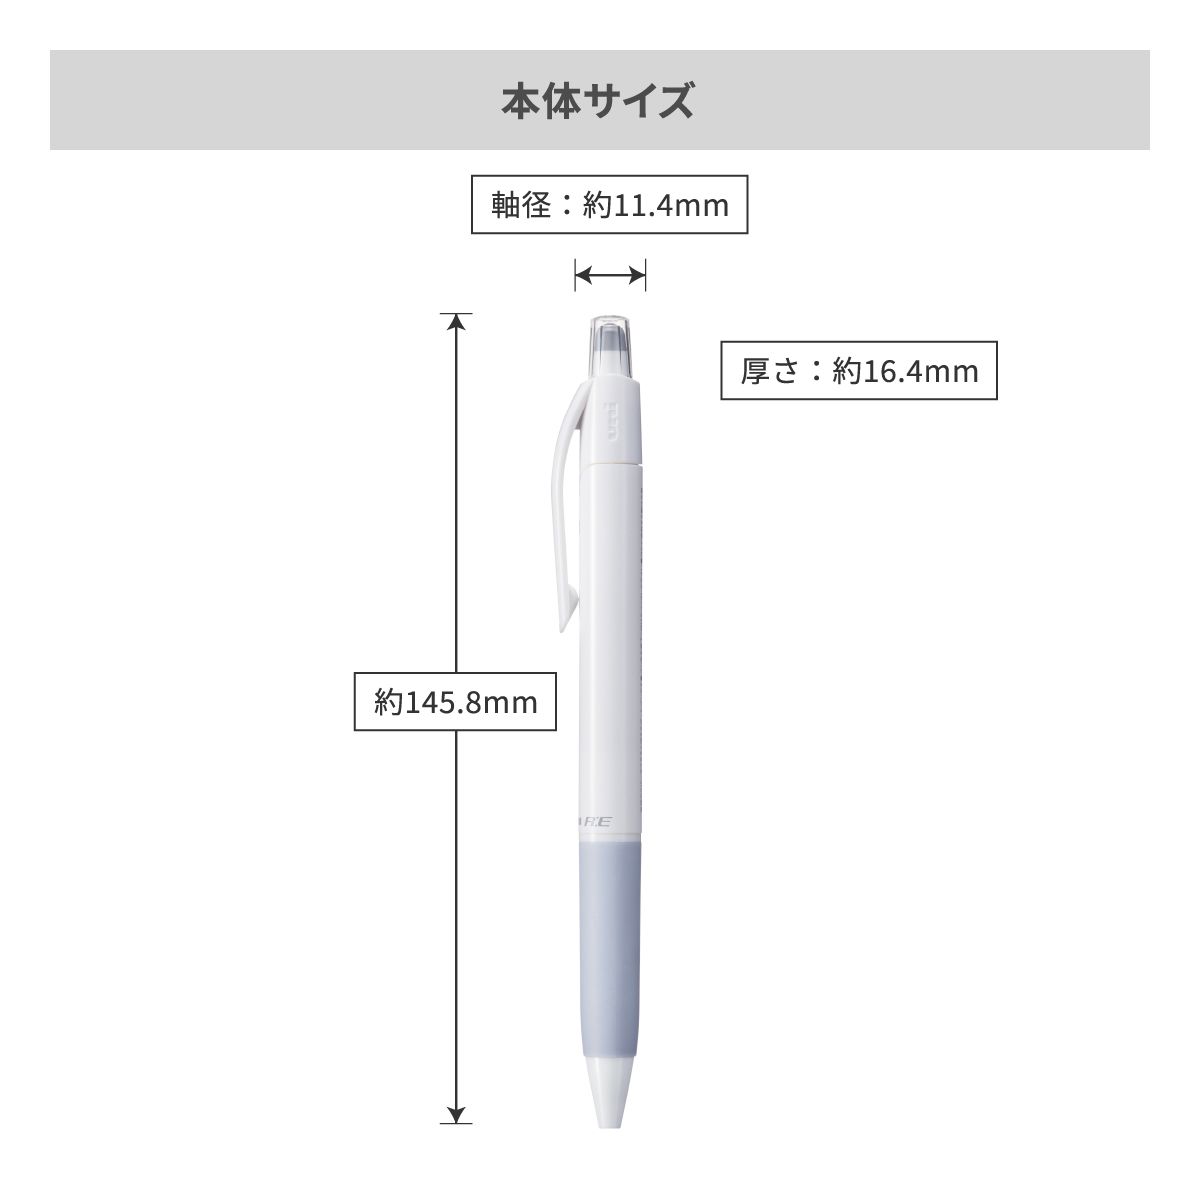 三菱鉛筆 ユニボール アールイー 白軸 0.5mm【名入れボールペン / パッド印刷】 画像5